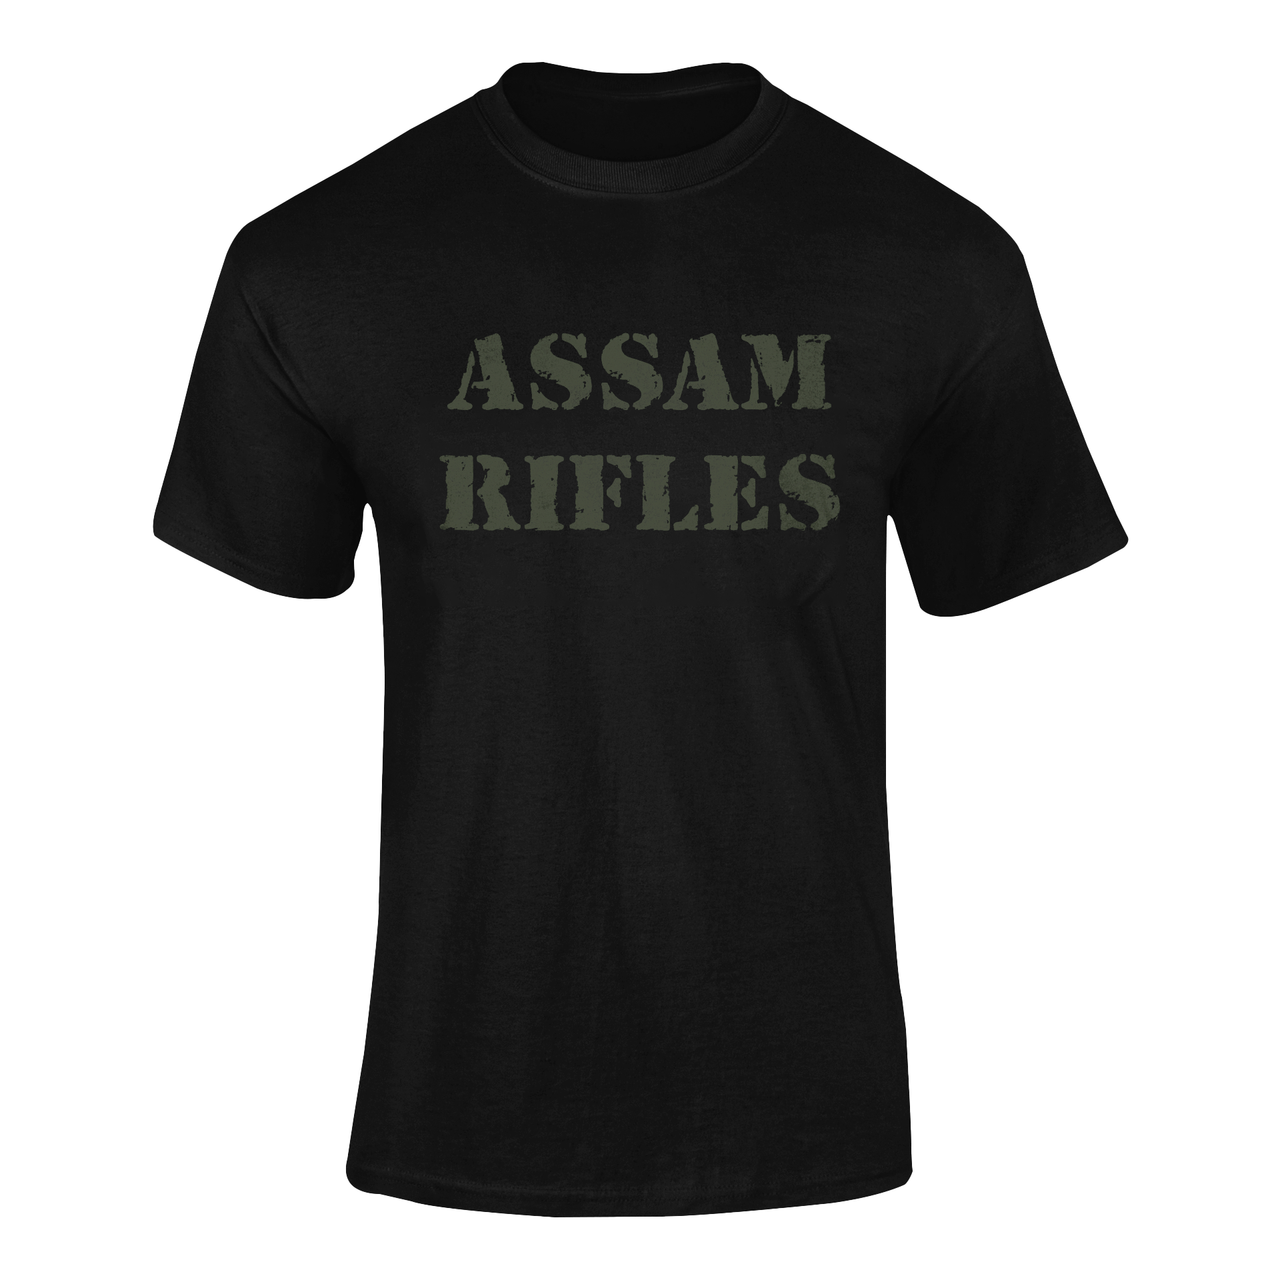 Military T-shirt - Assam Rifles (Men)